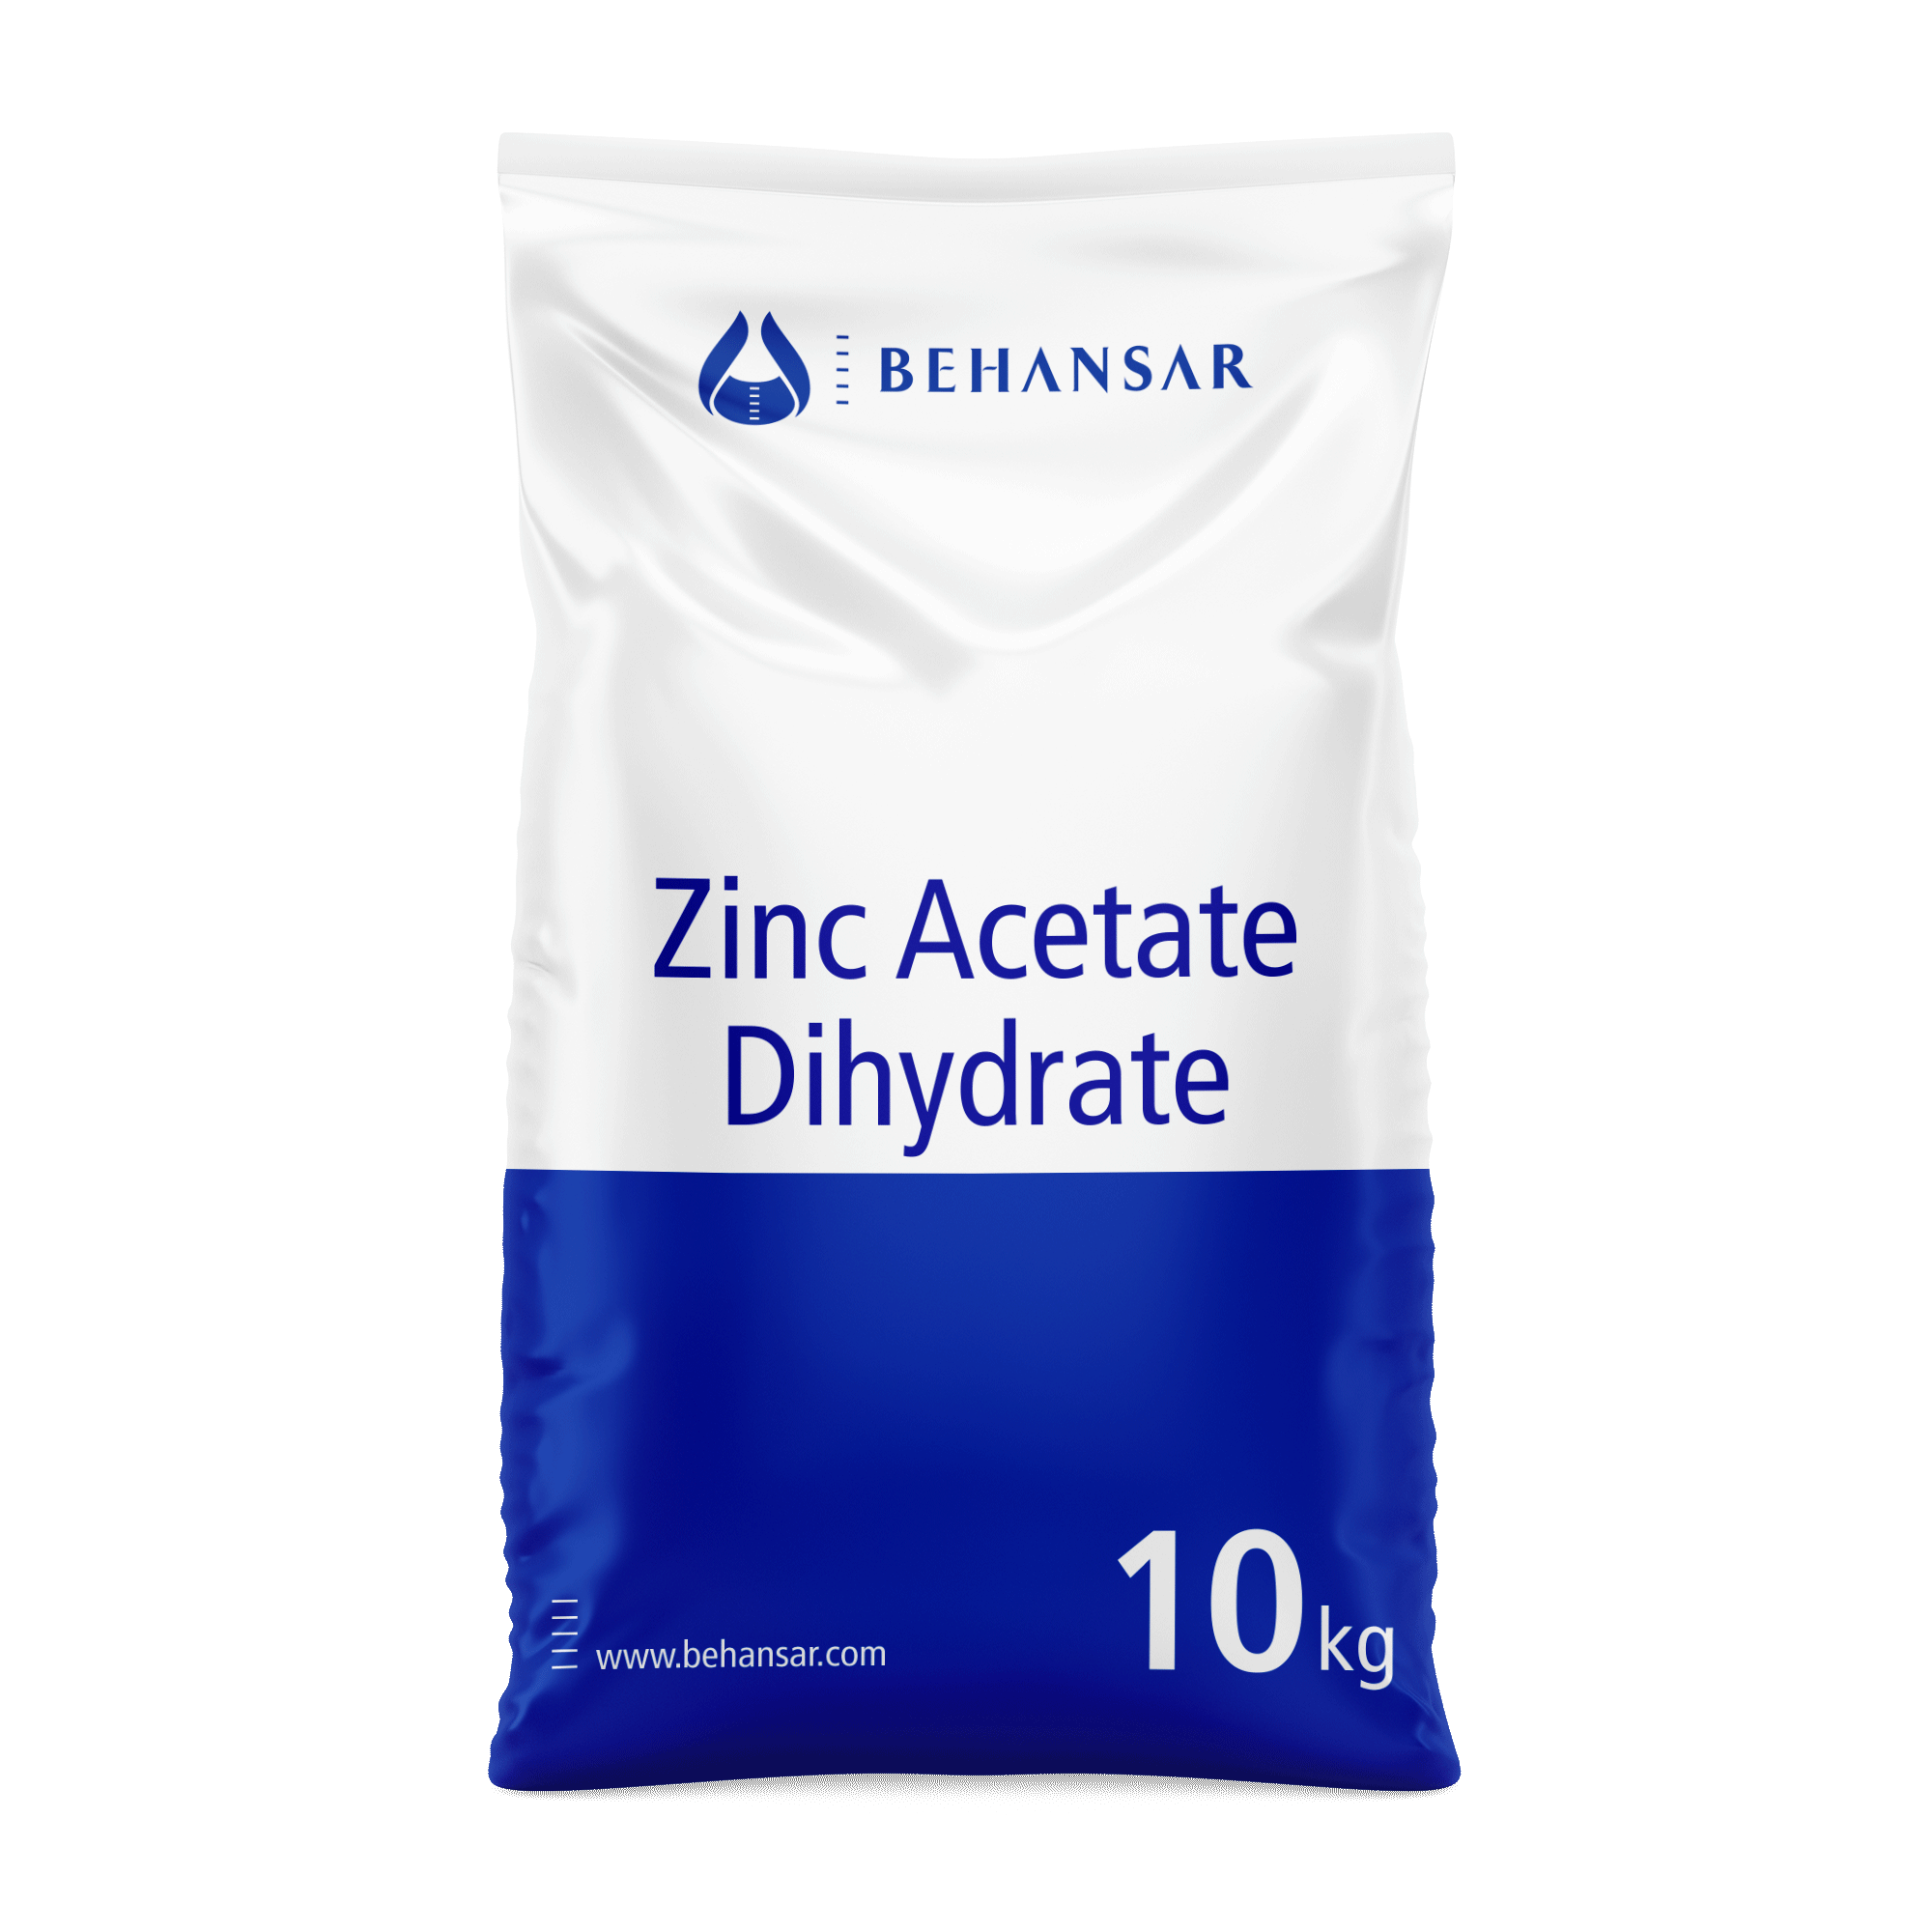 زینک استات دی هیدرات یکی از تولیدات شرکت بهانسار است